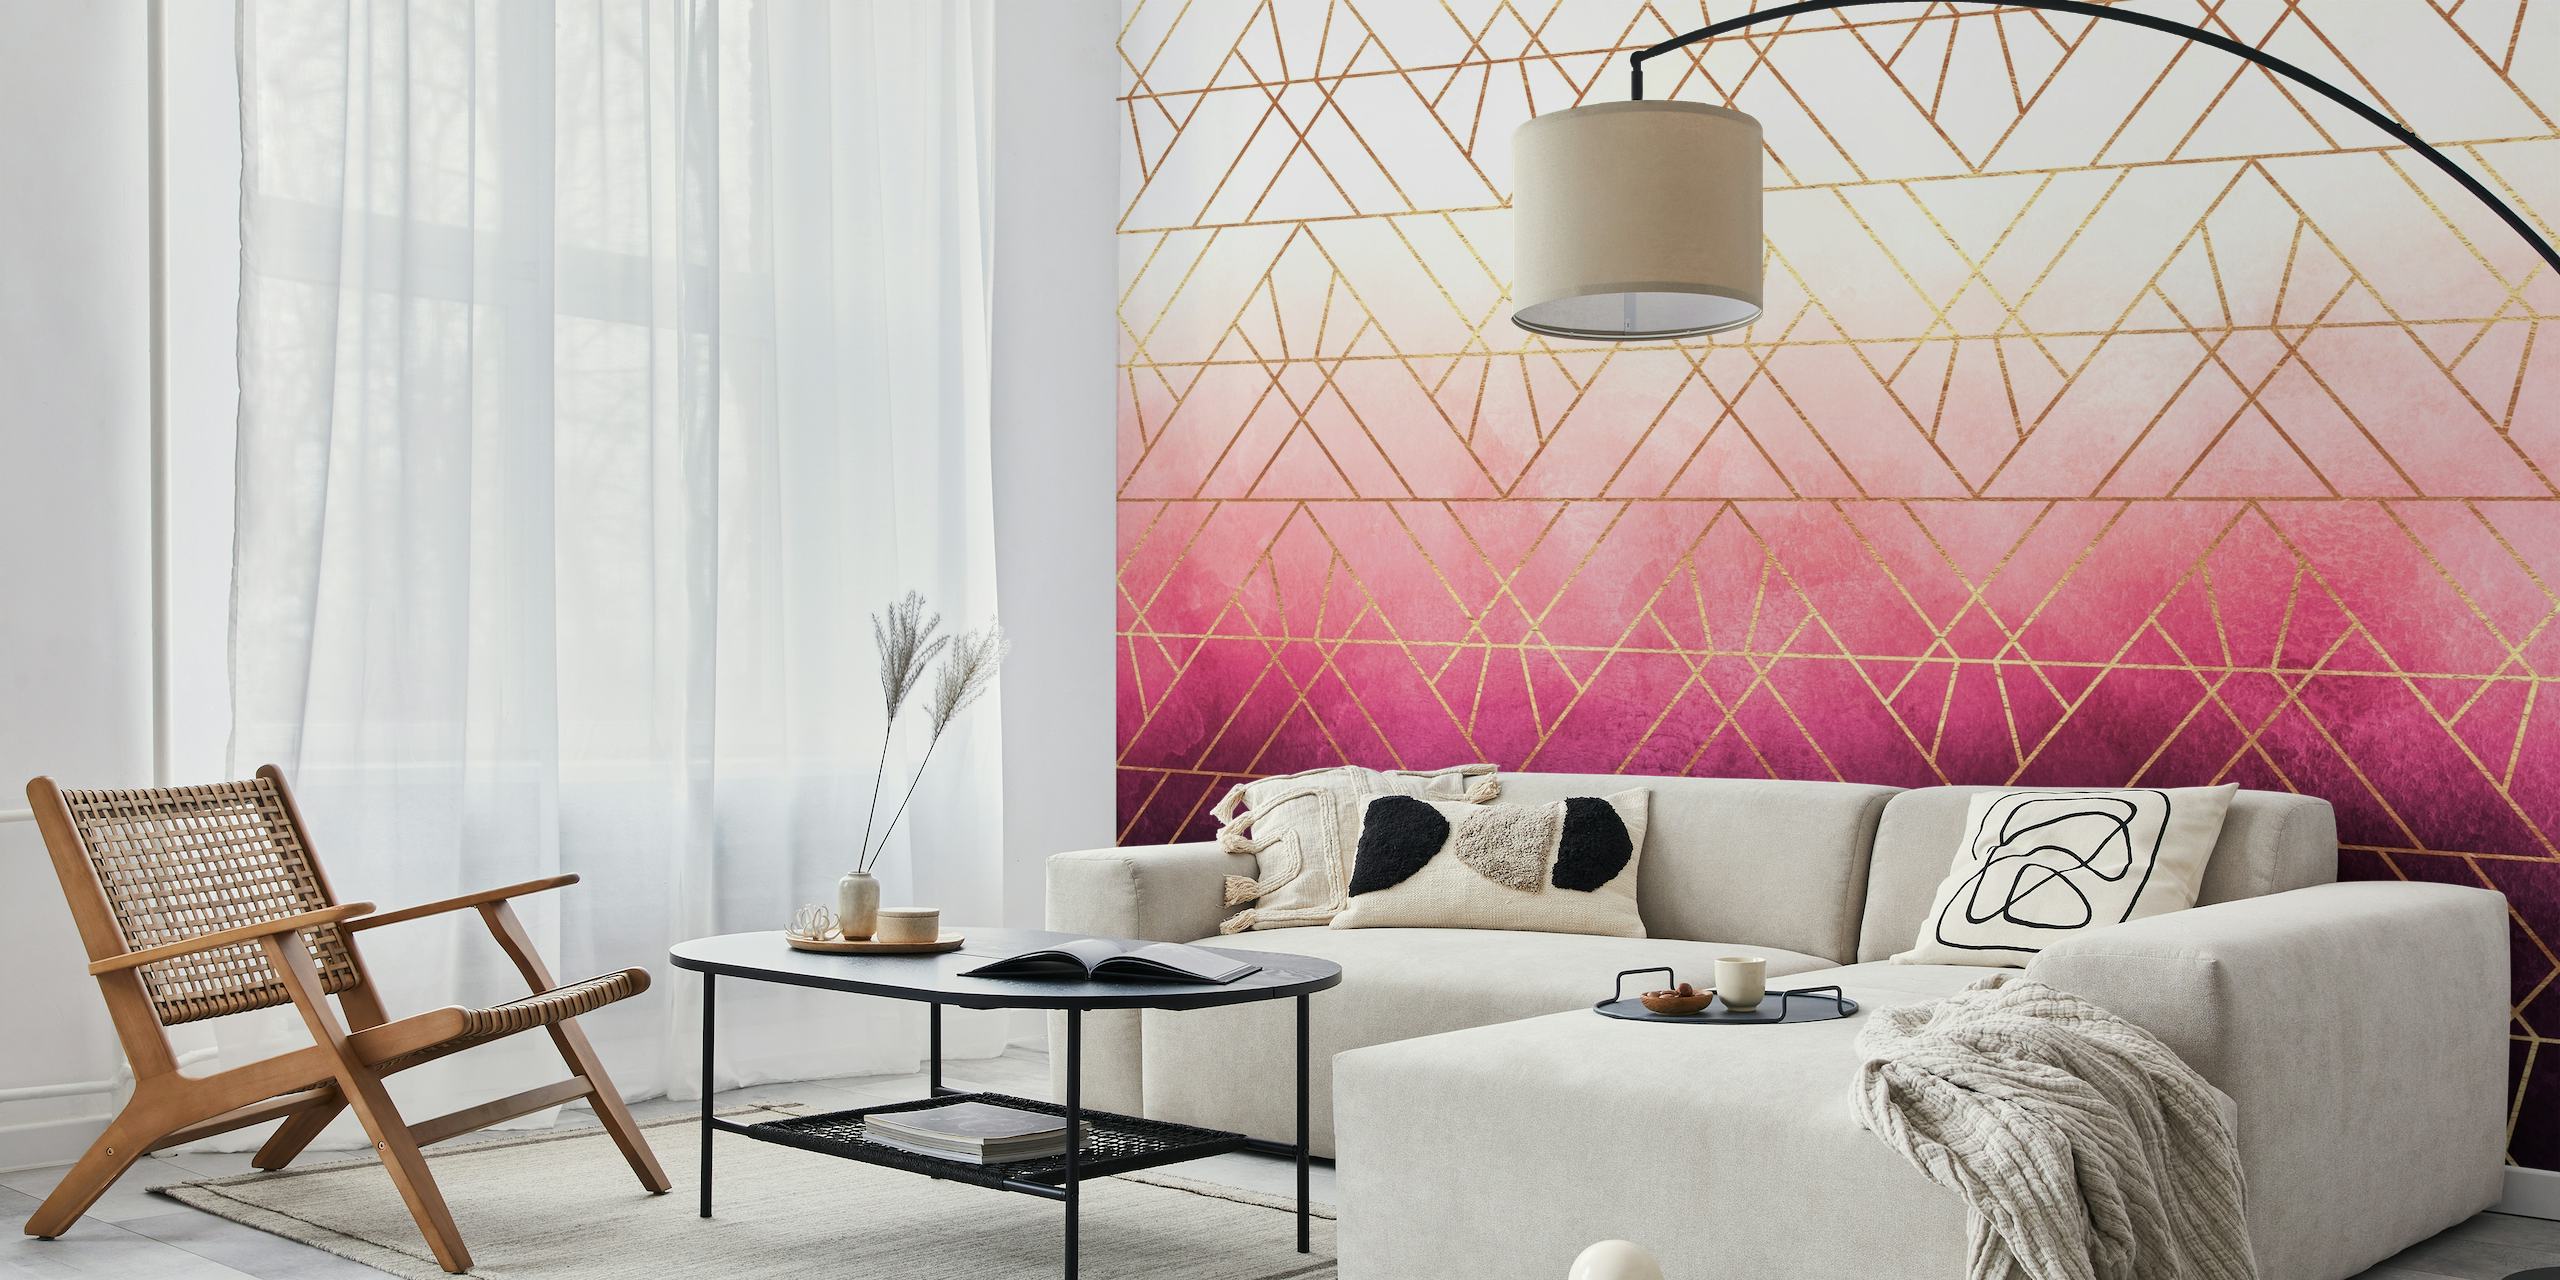 Snyggt rosa ombre triangelmönster med guldaccenter väggmålning